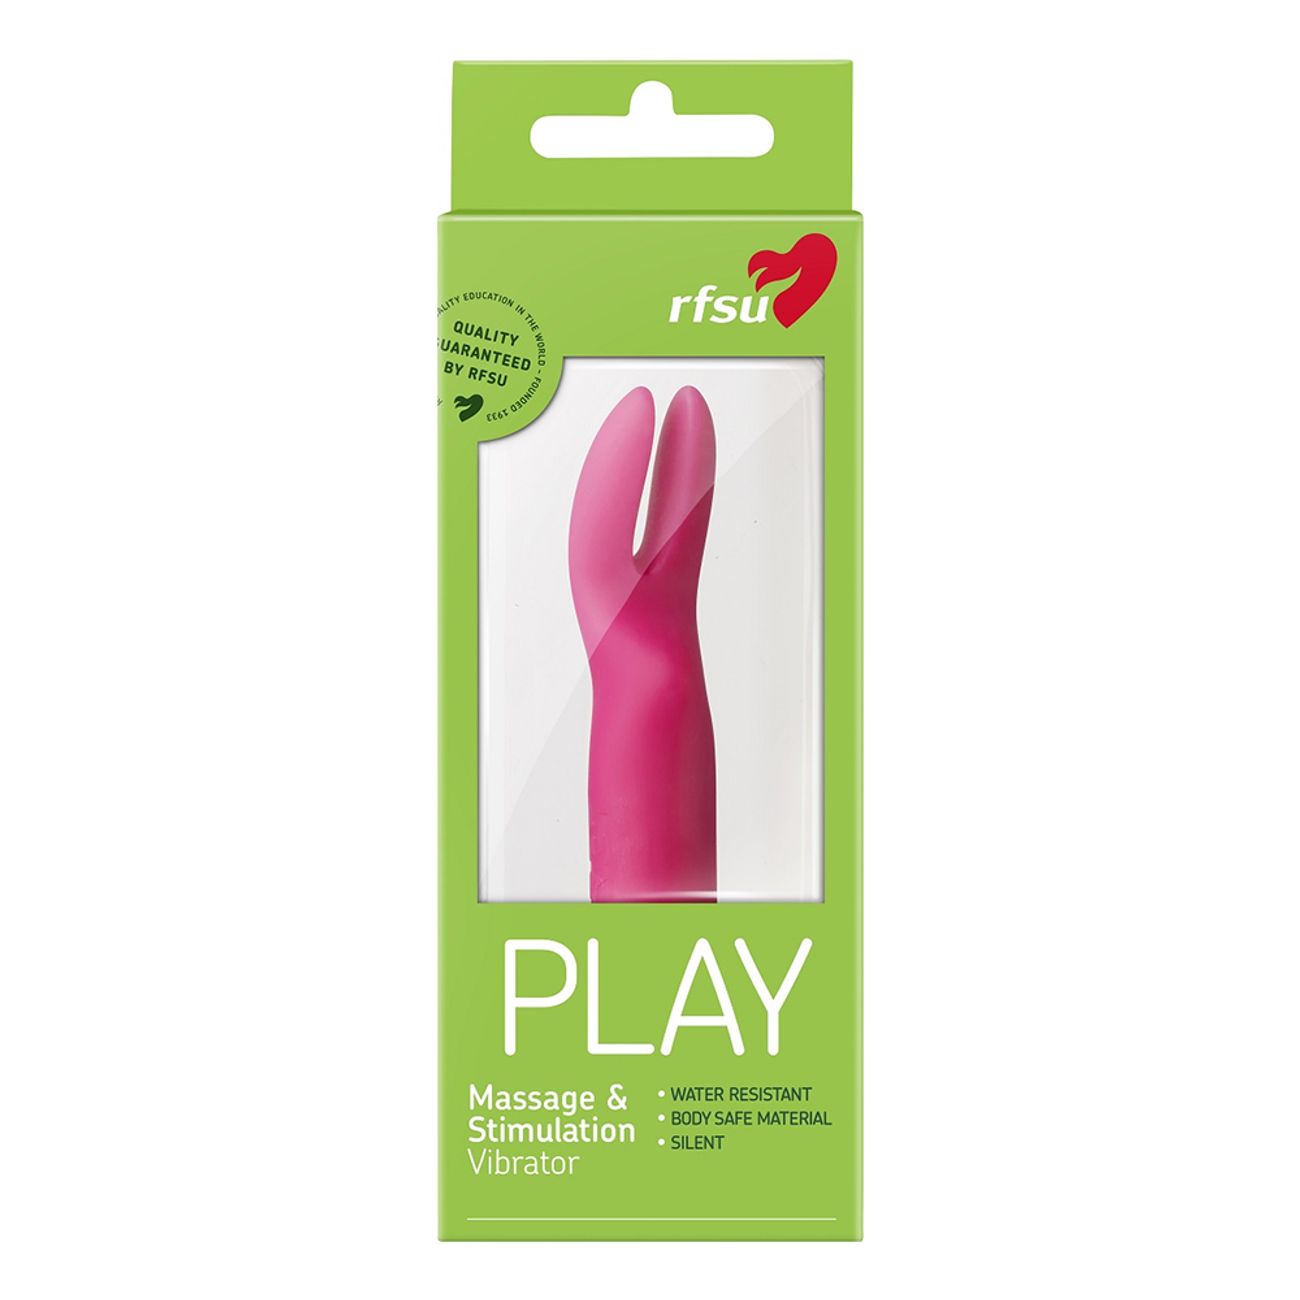 rfsu-play-vibrator-1